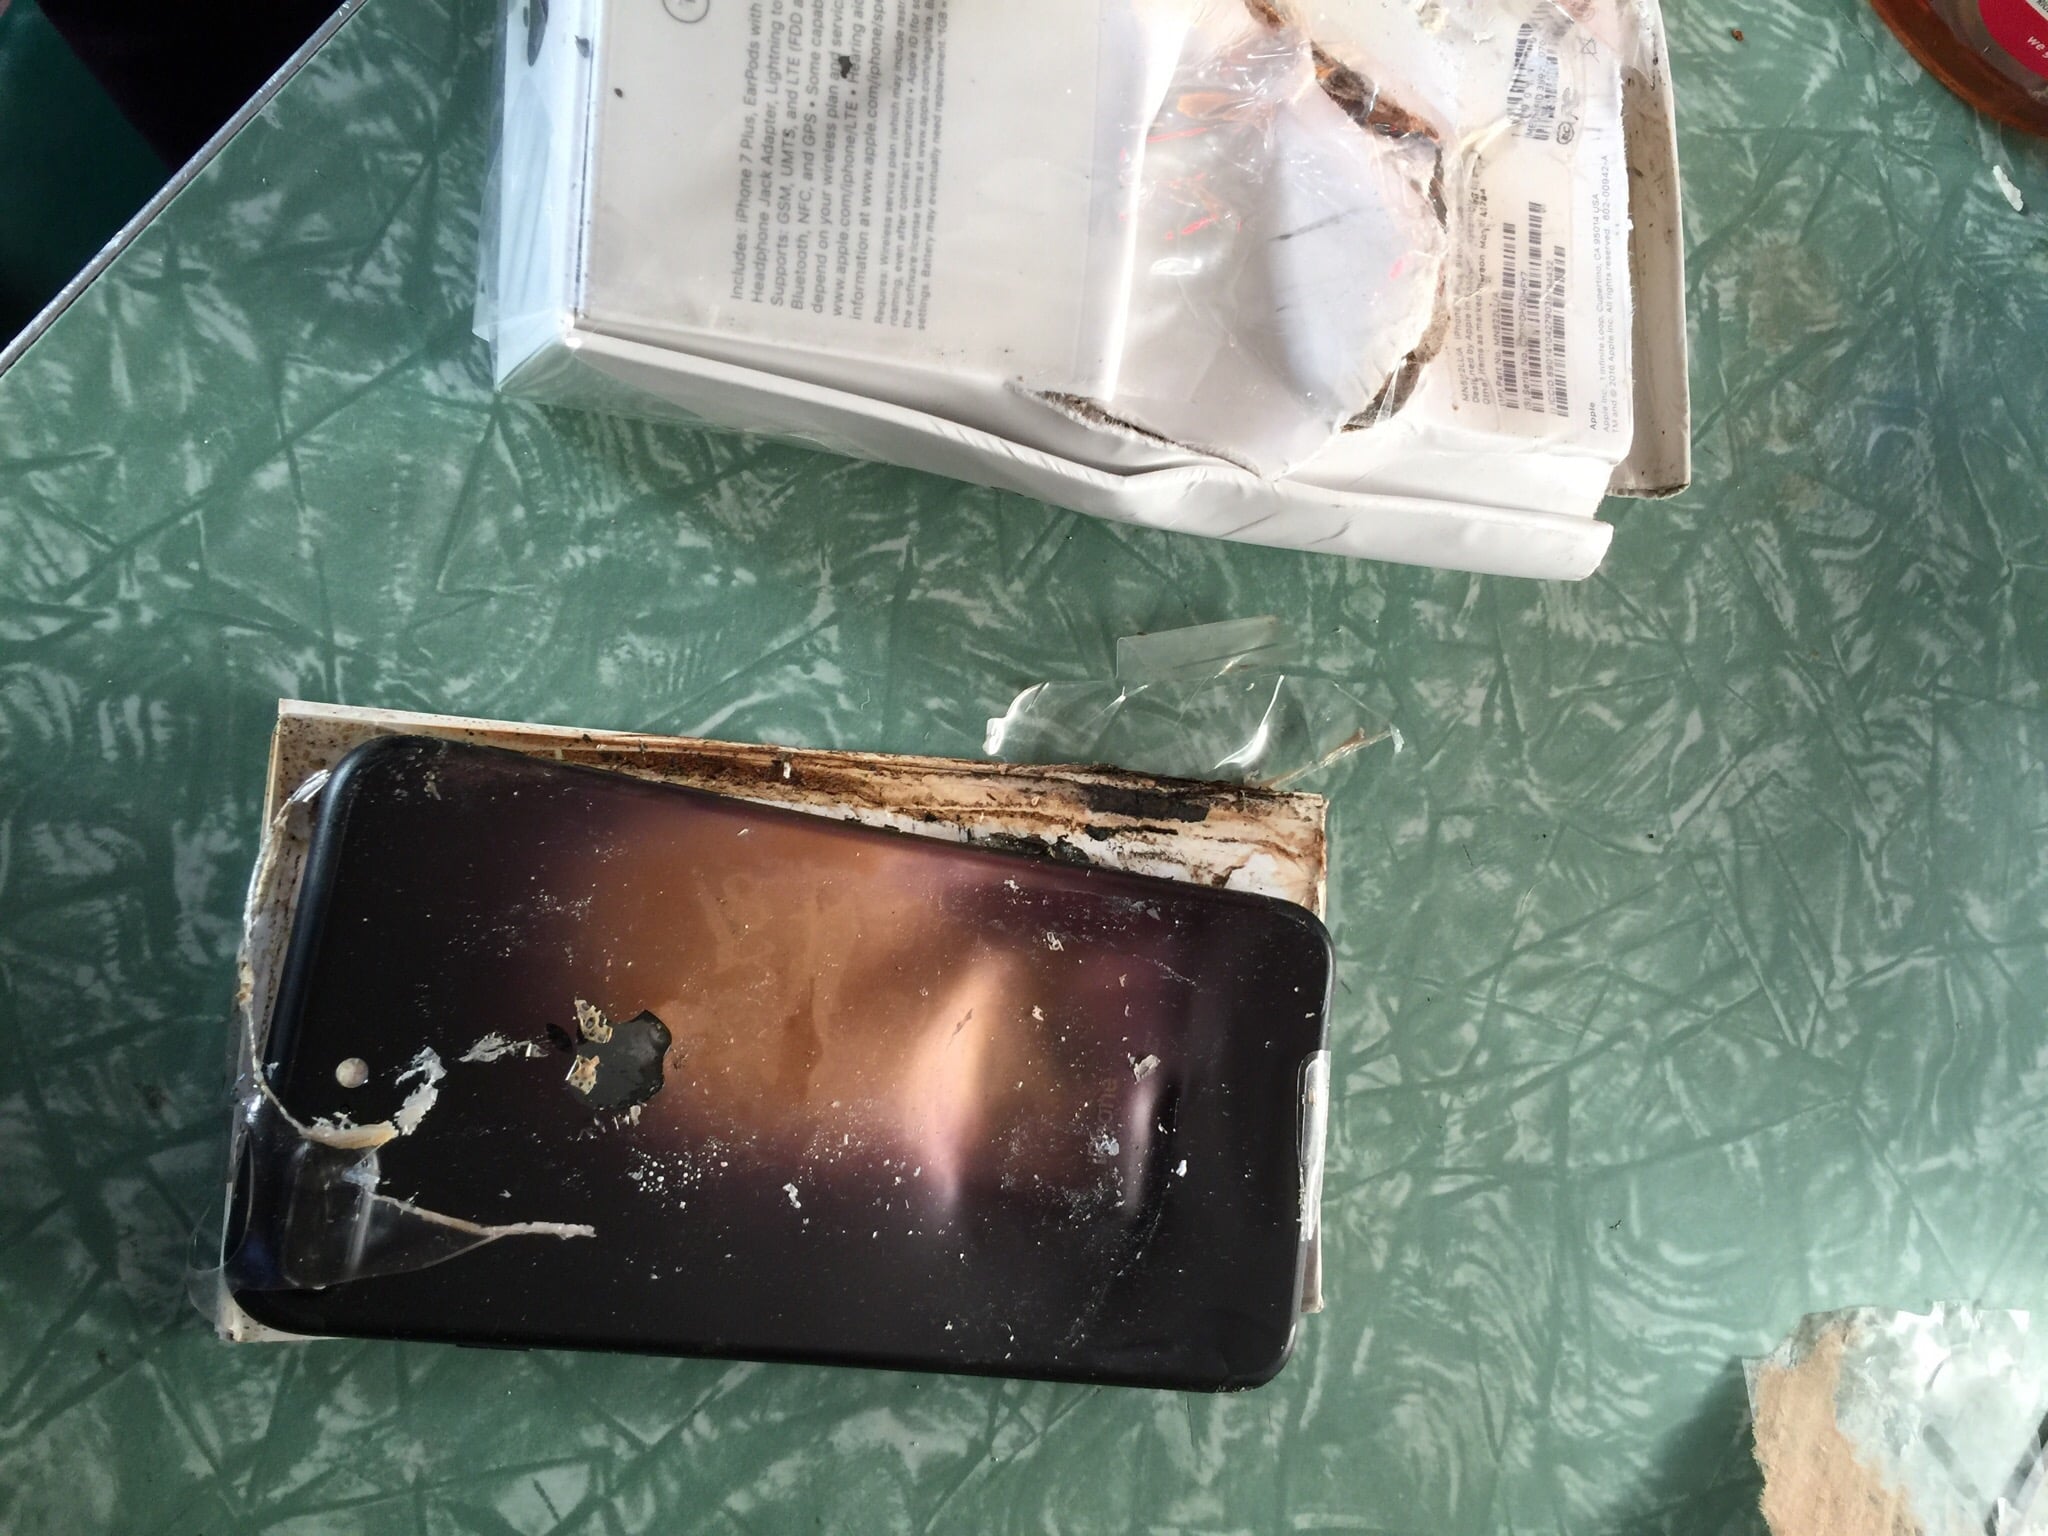 新品未開封の「iPhone 7 Plus」が突如爆発、箱を突き破って昇天 | iPod LOVE